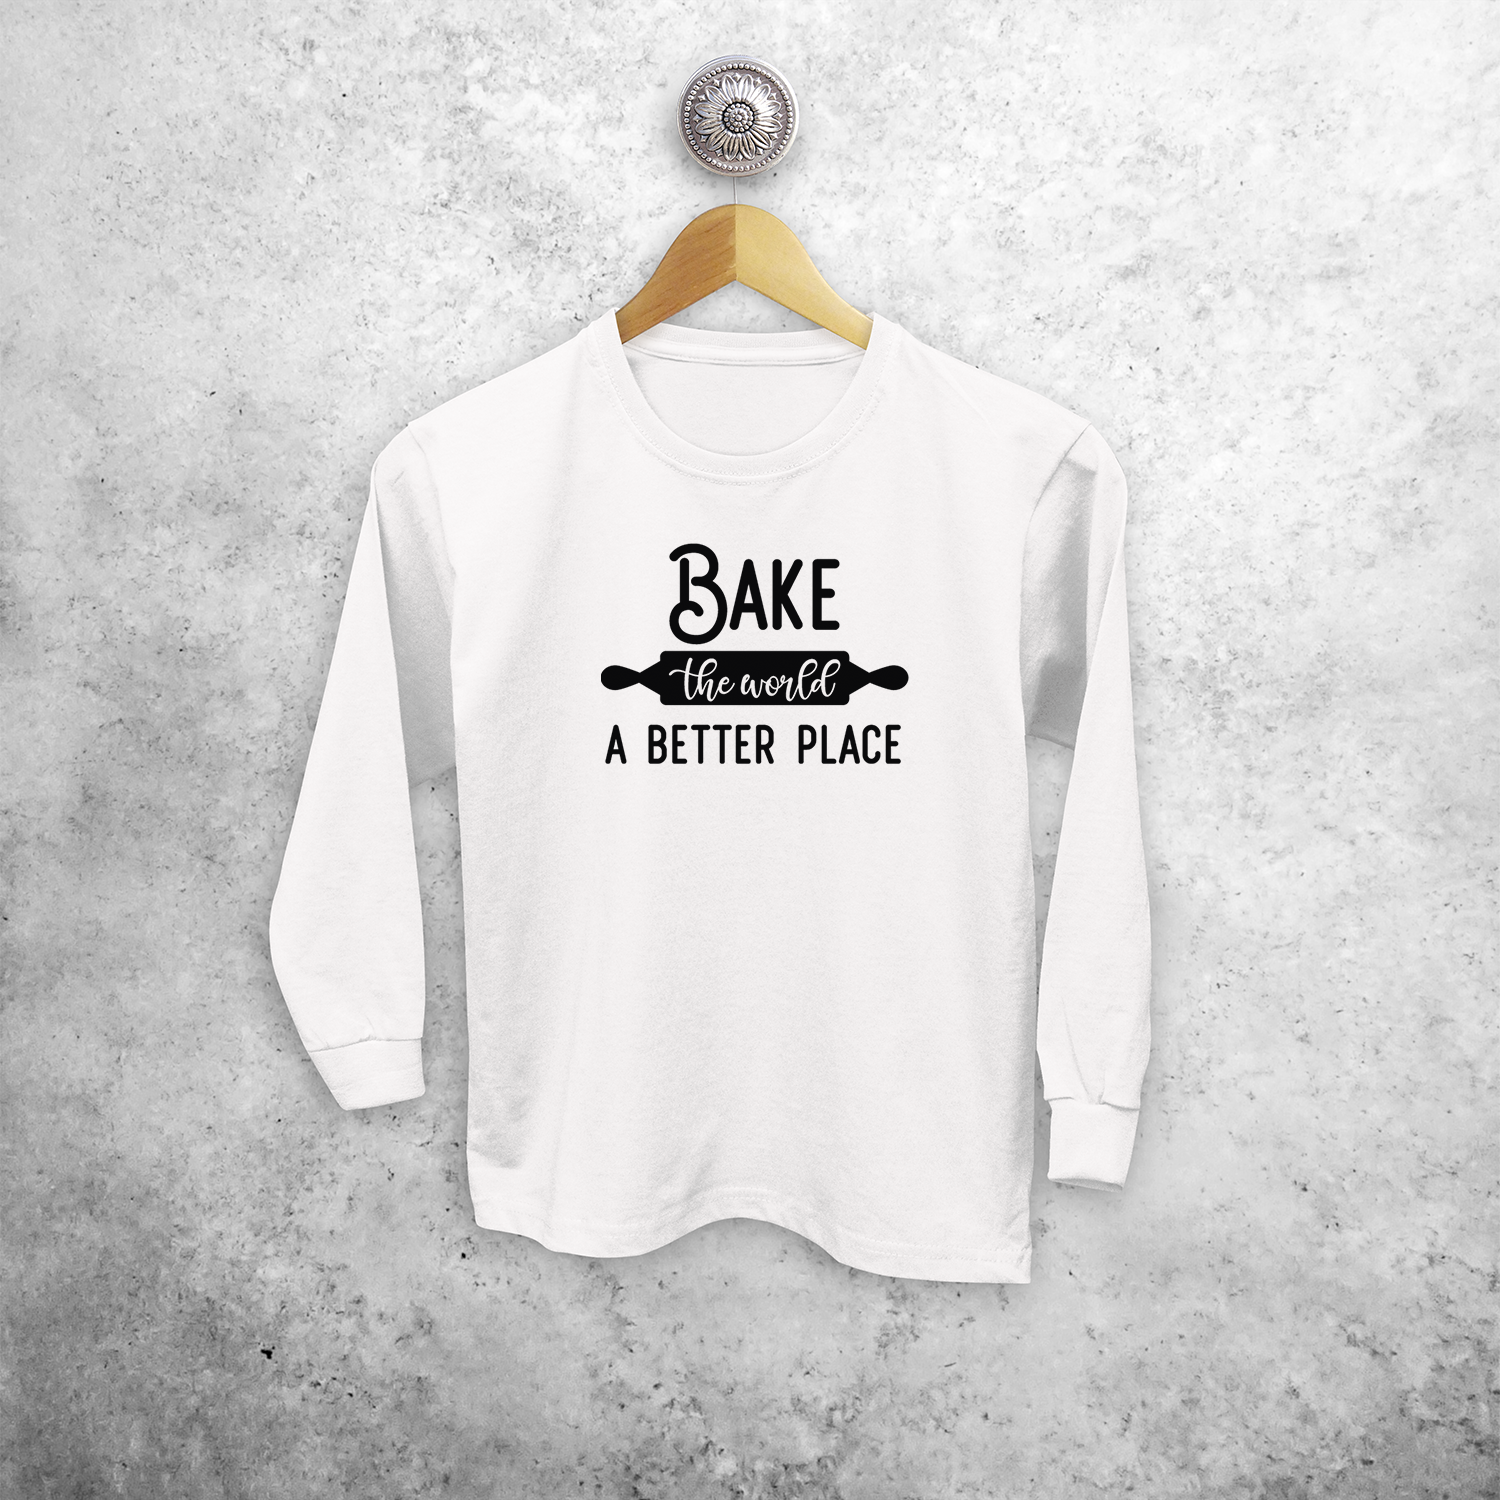 'Bake the world a better place' kids longsleeve shirt